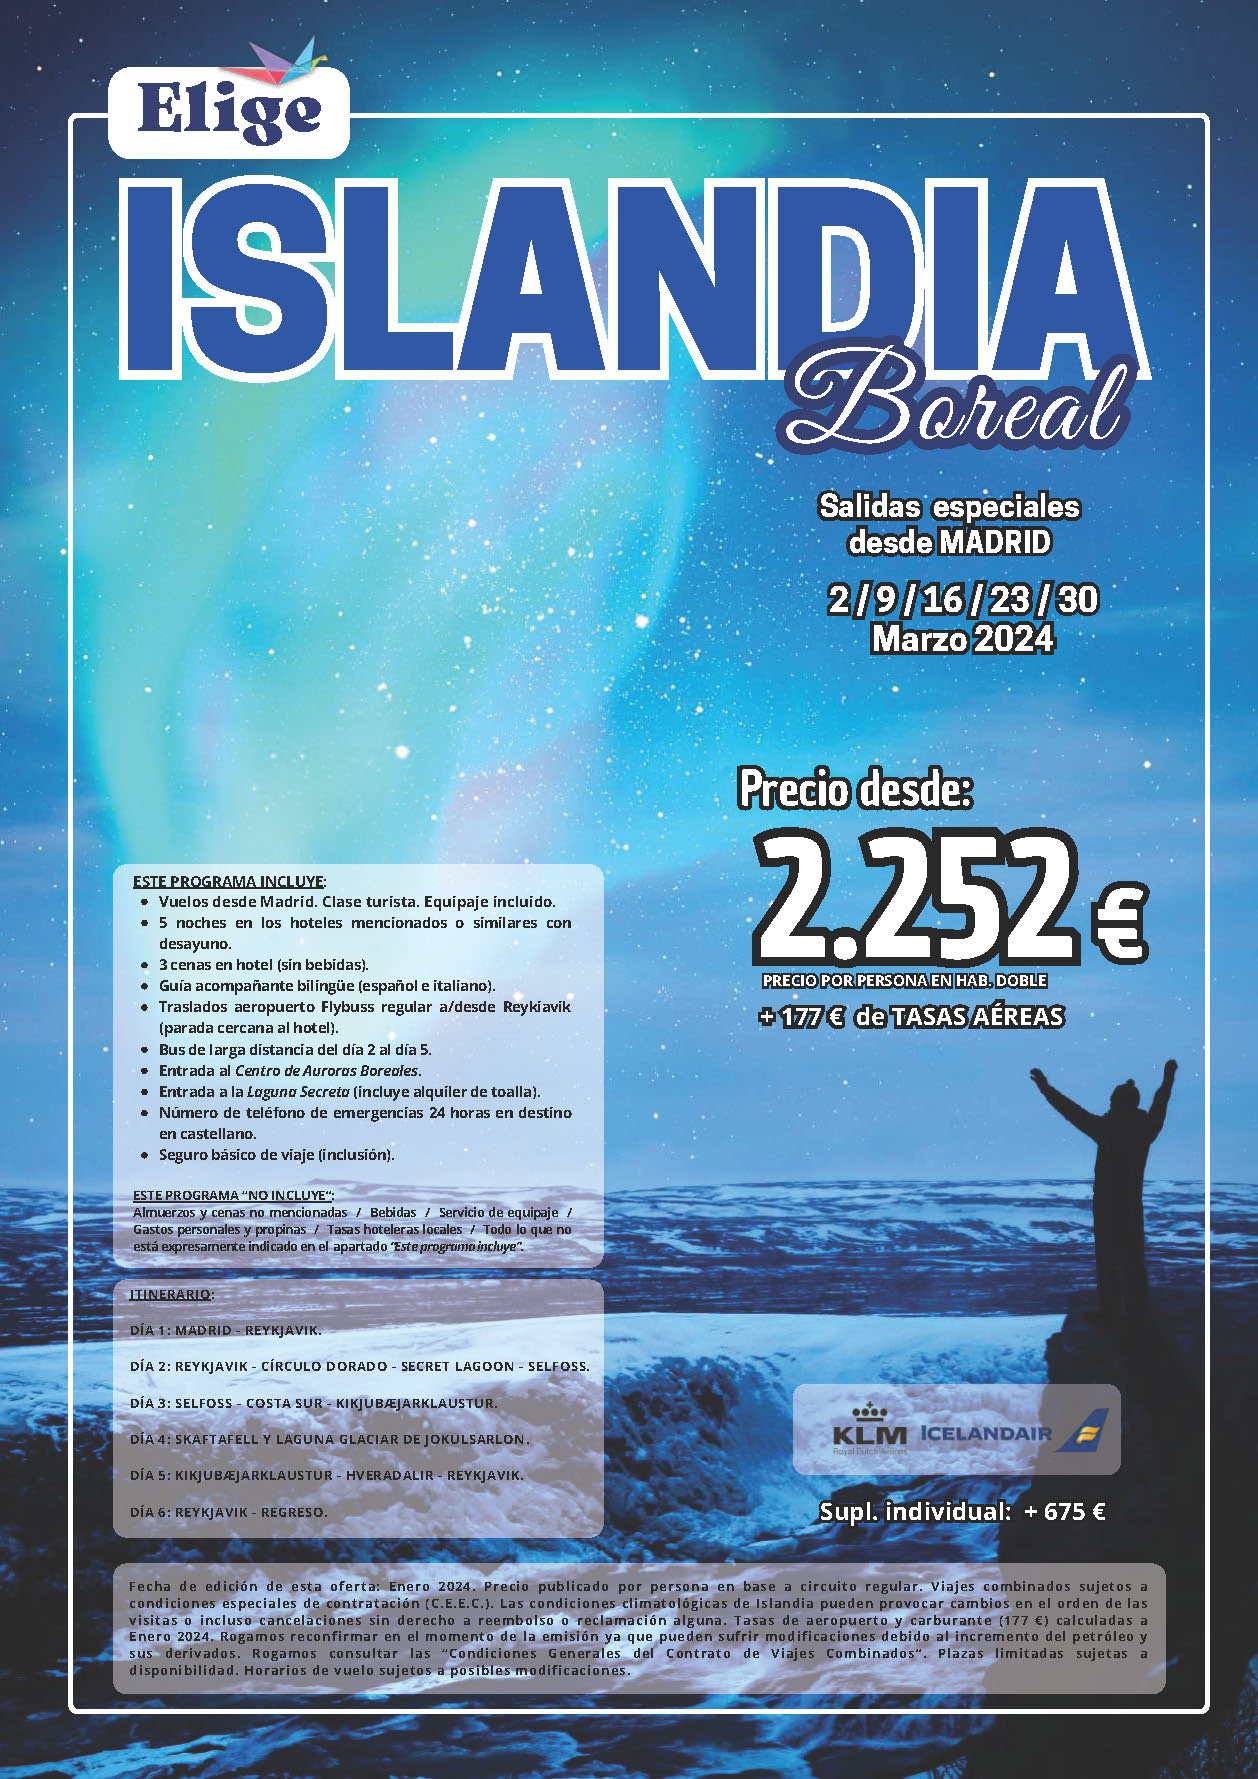 Oferta Elige tu Viaje circuito Islandia Boreal 5 dias salidas especiales Marzo 2024 en vuelo directo desde Madrid